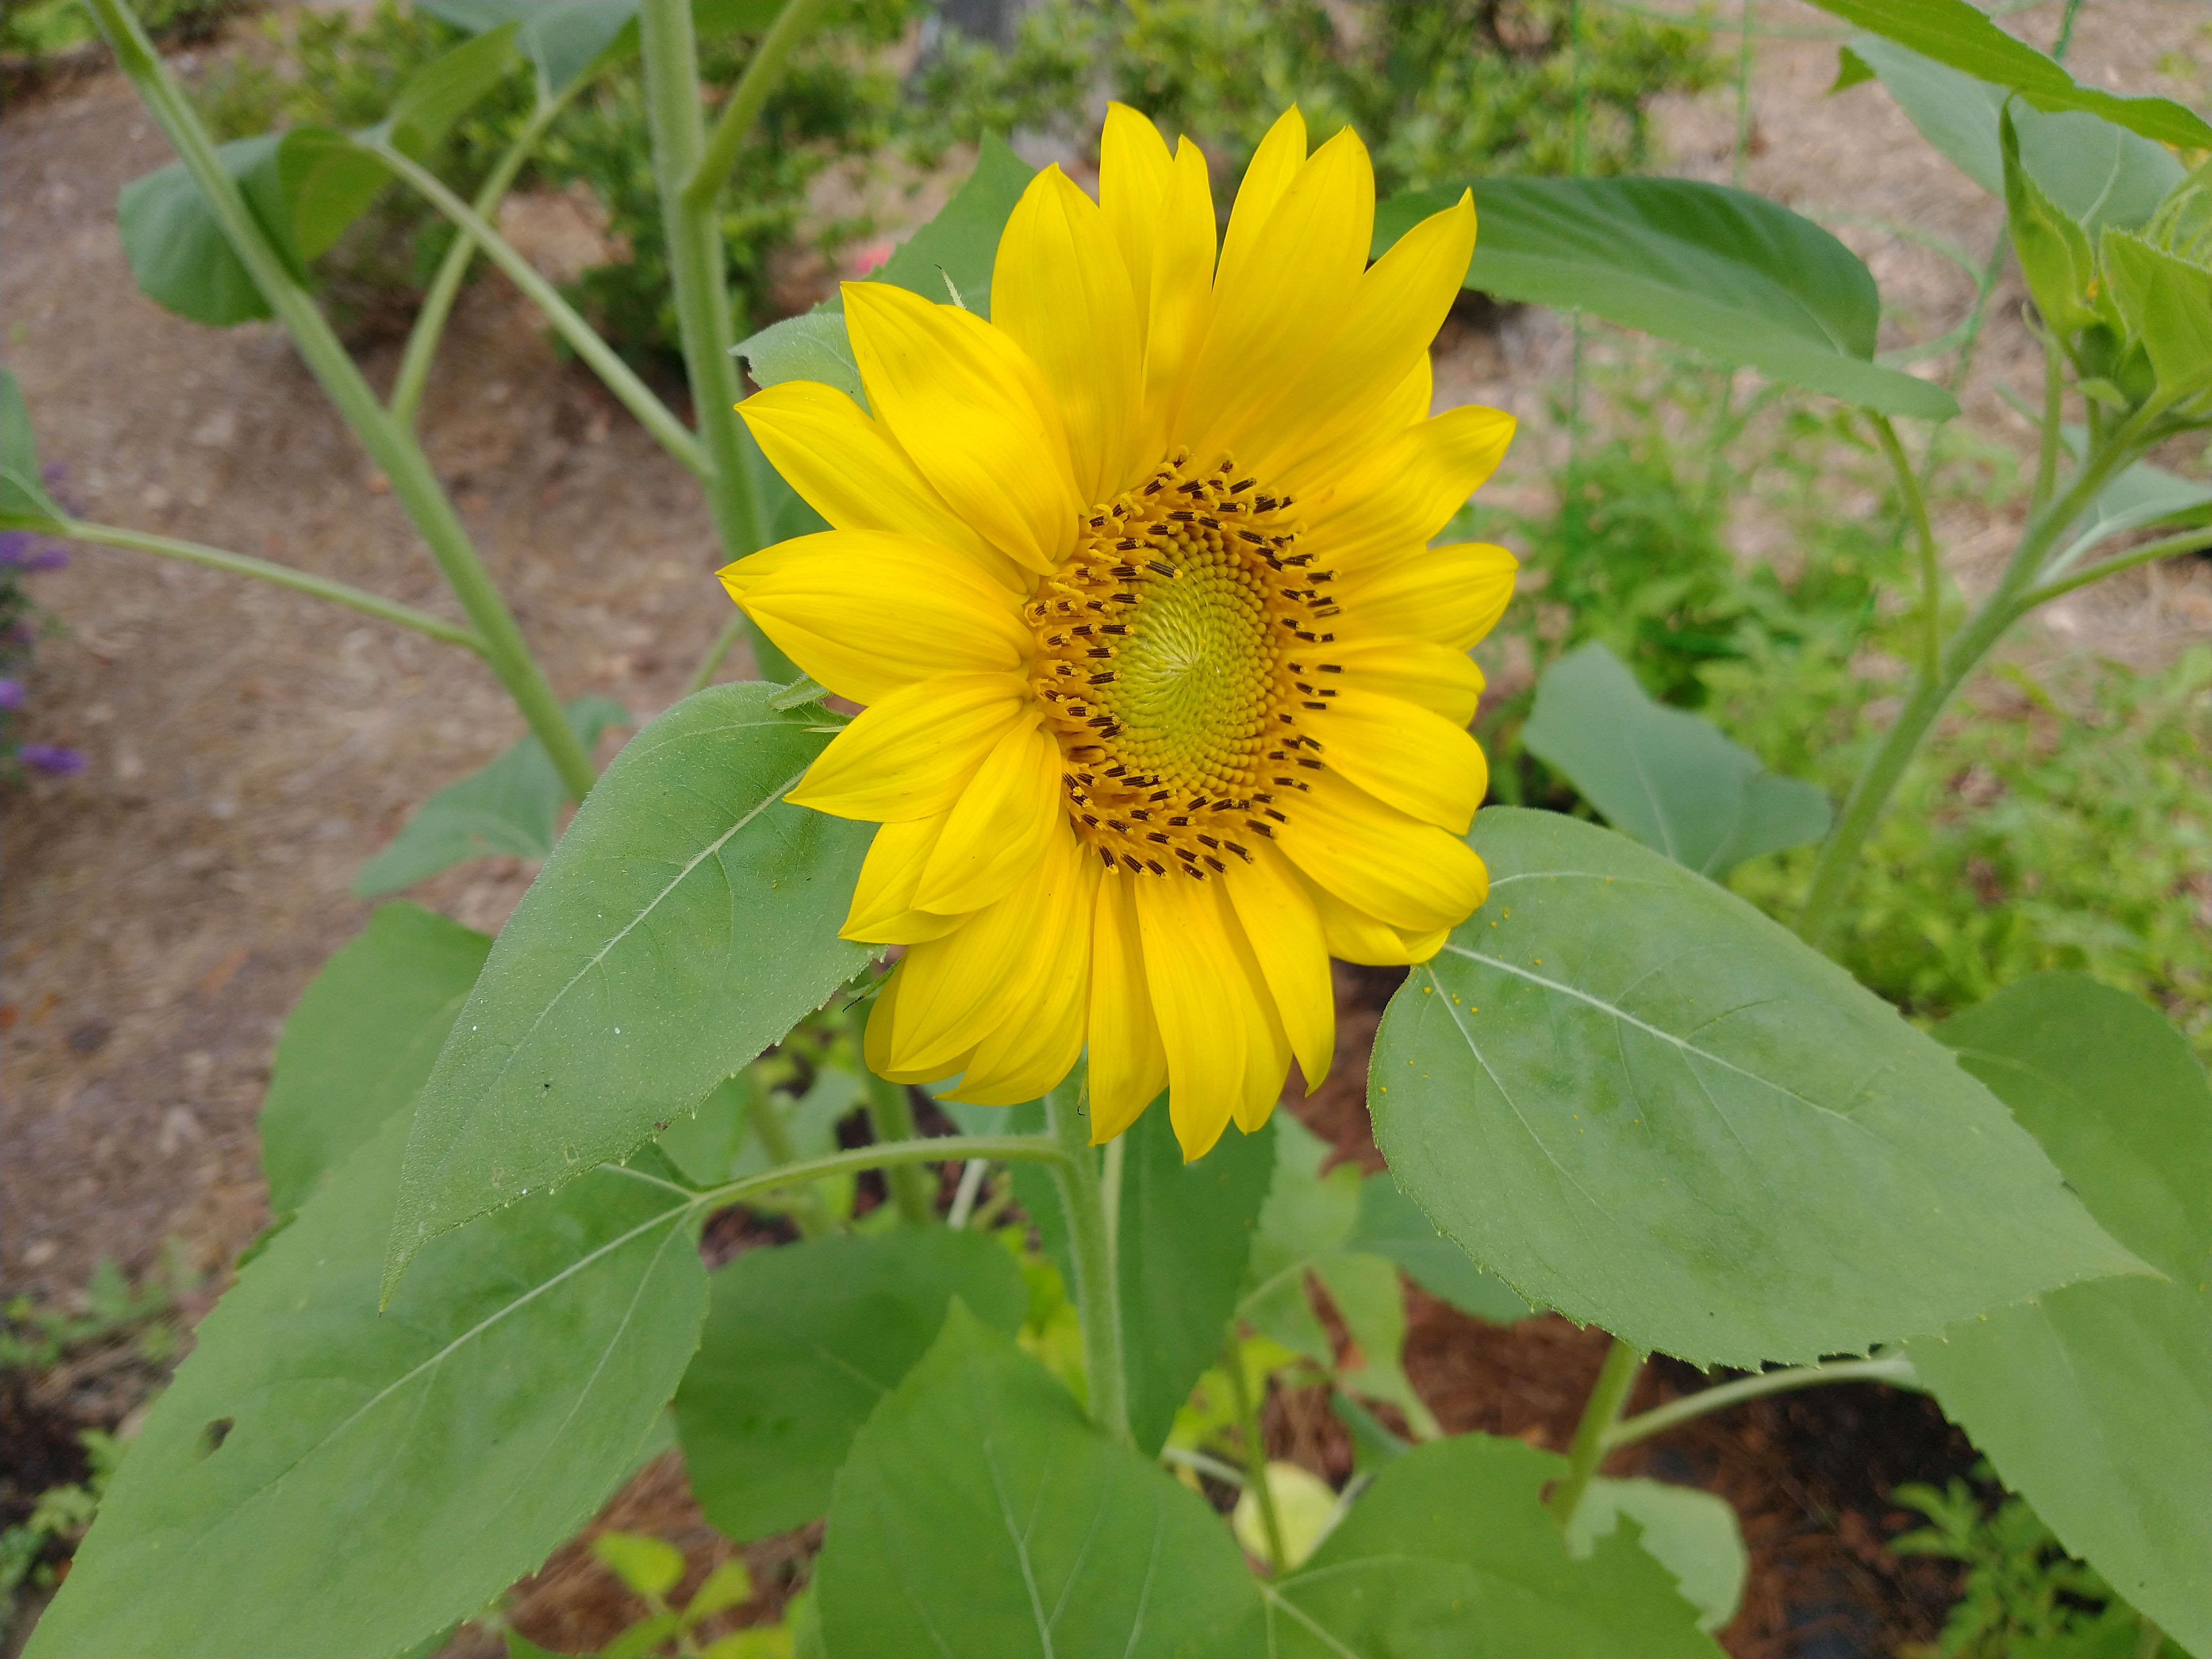 A sunflower from my garden.